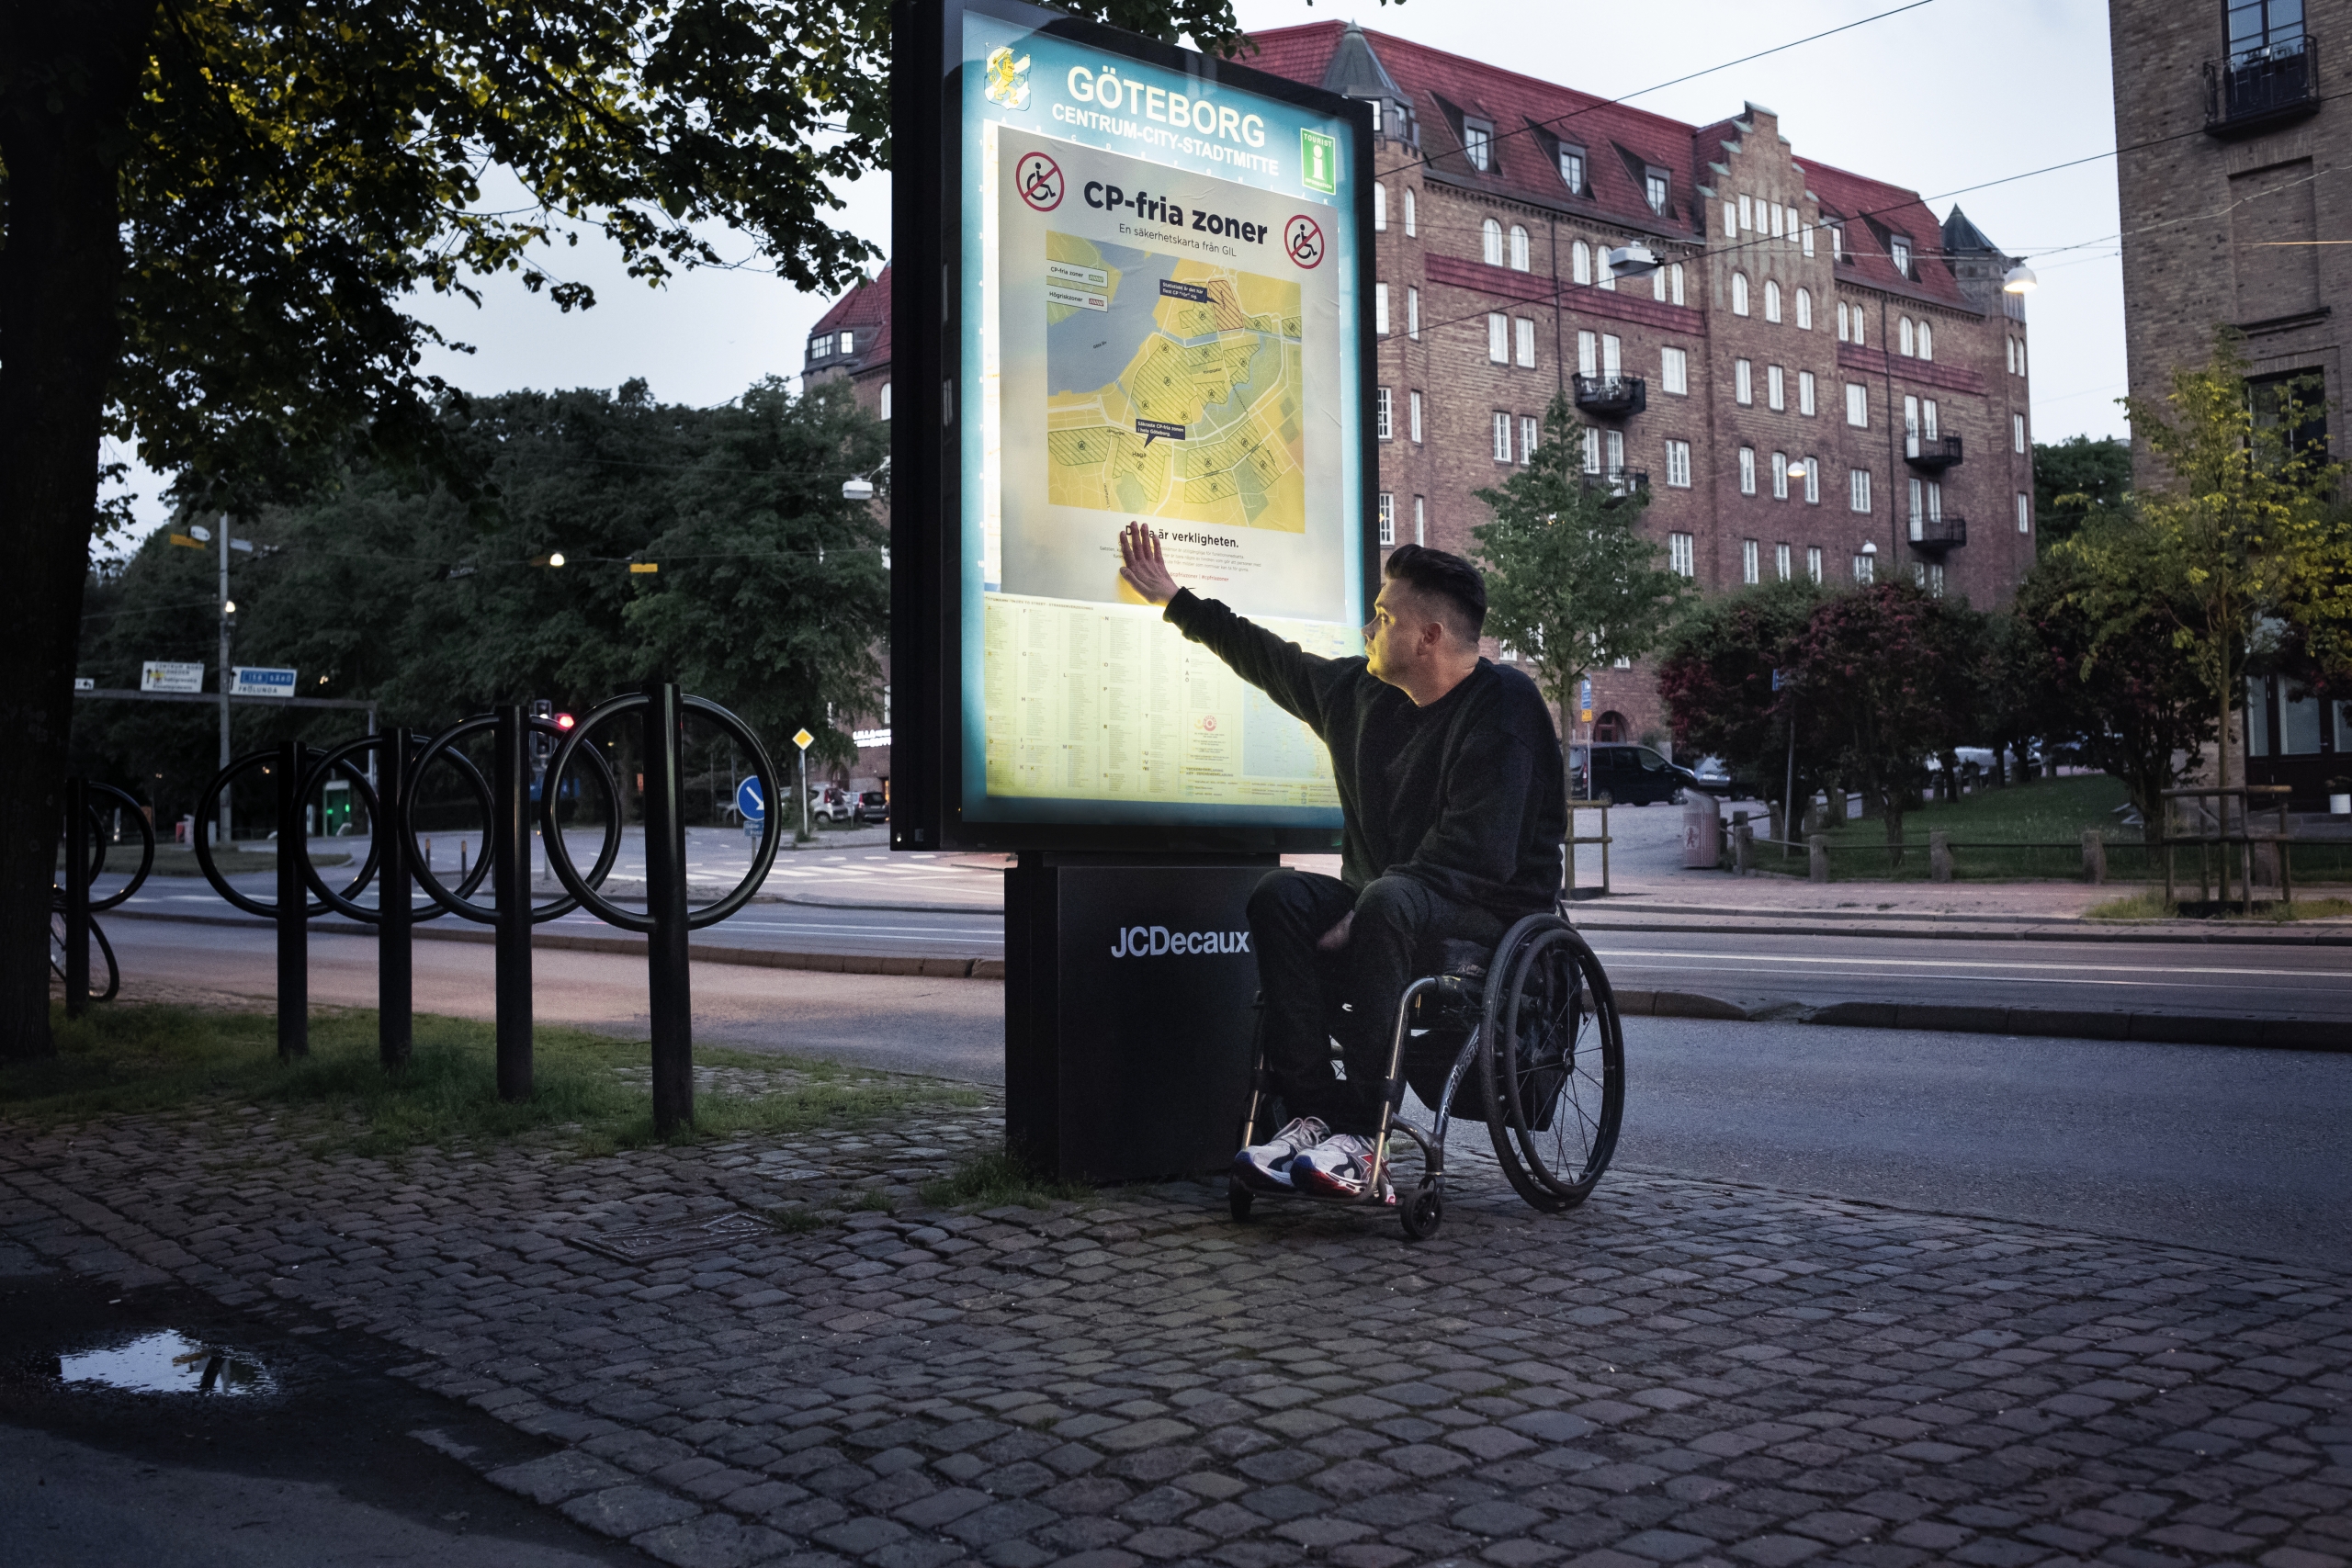 Anders Westgerd framför stadskarta som visar Göteborgs CP-fria zoner.